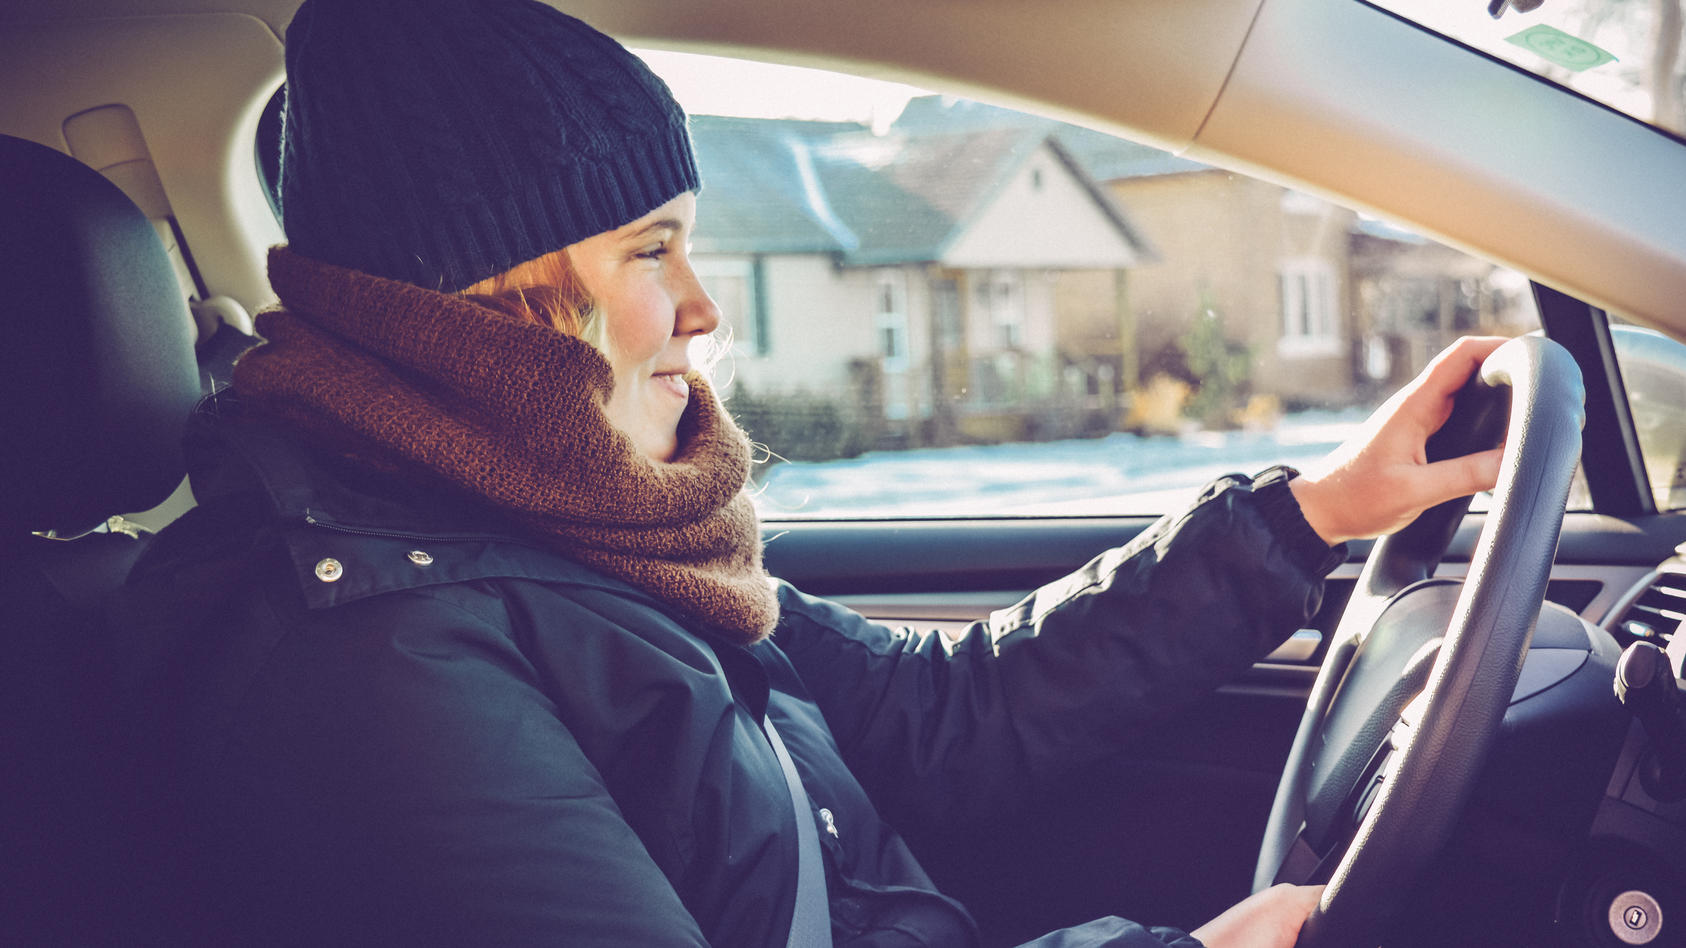 Winterjacke im Auto nie anlassen! Es kann zu schlimmen Verletzungen kommen